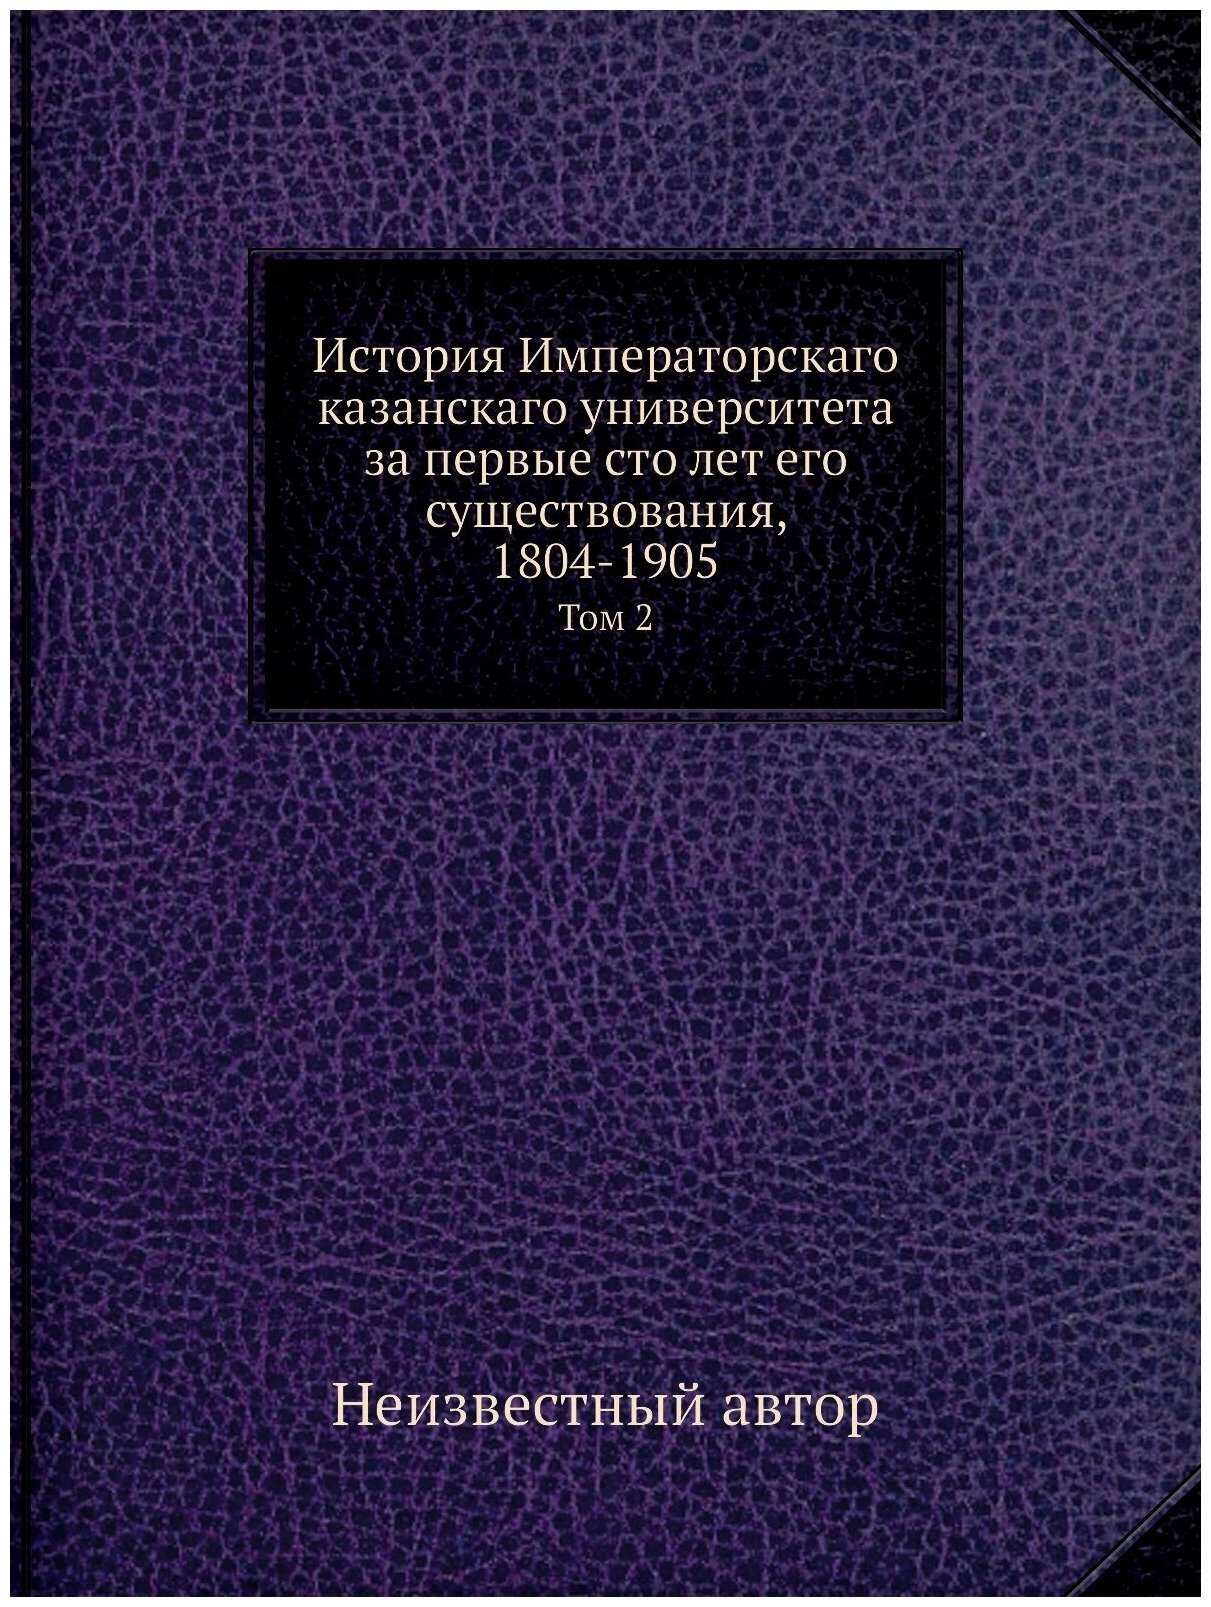 История Императорскаго казанскаго университета за первые сто лет его существования, 1804-1905. Том 2